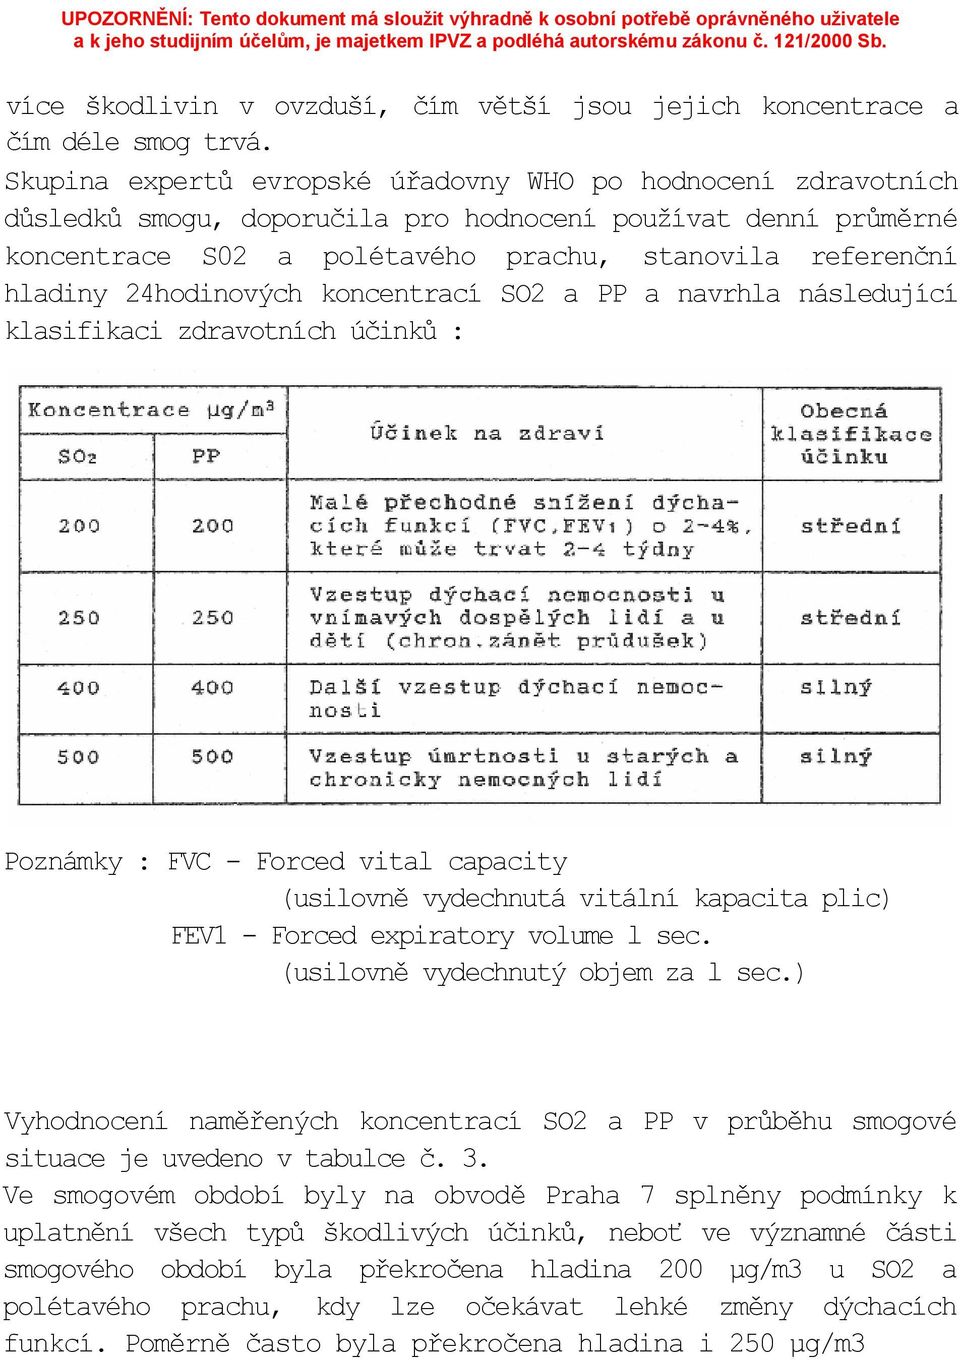 24hodinových koncentrací SO2 a PP a navrhla následující klasifikaci zdravotních účinků : Poznámky : FVC - Forced vital capacity (usilovně vydechnutá vitální kapacita plic) FEV1 - Forced expiratory